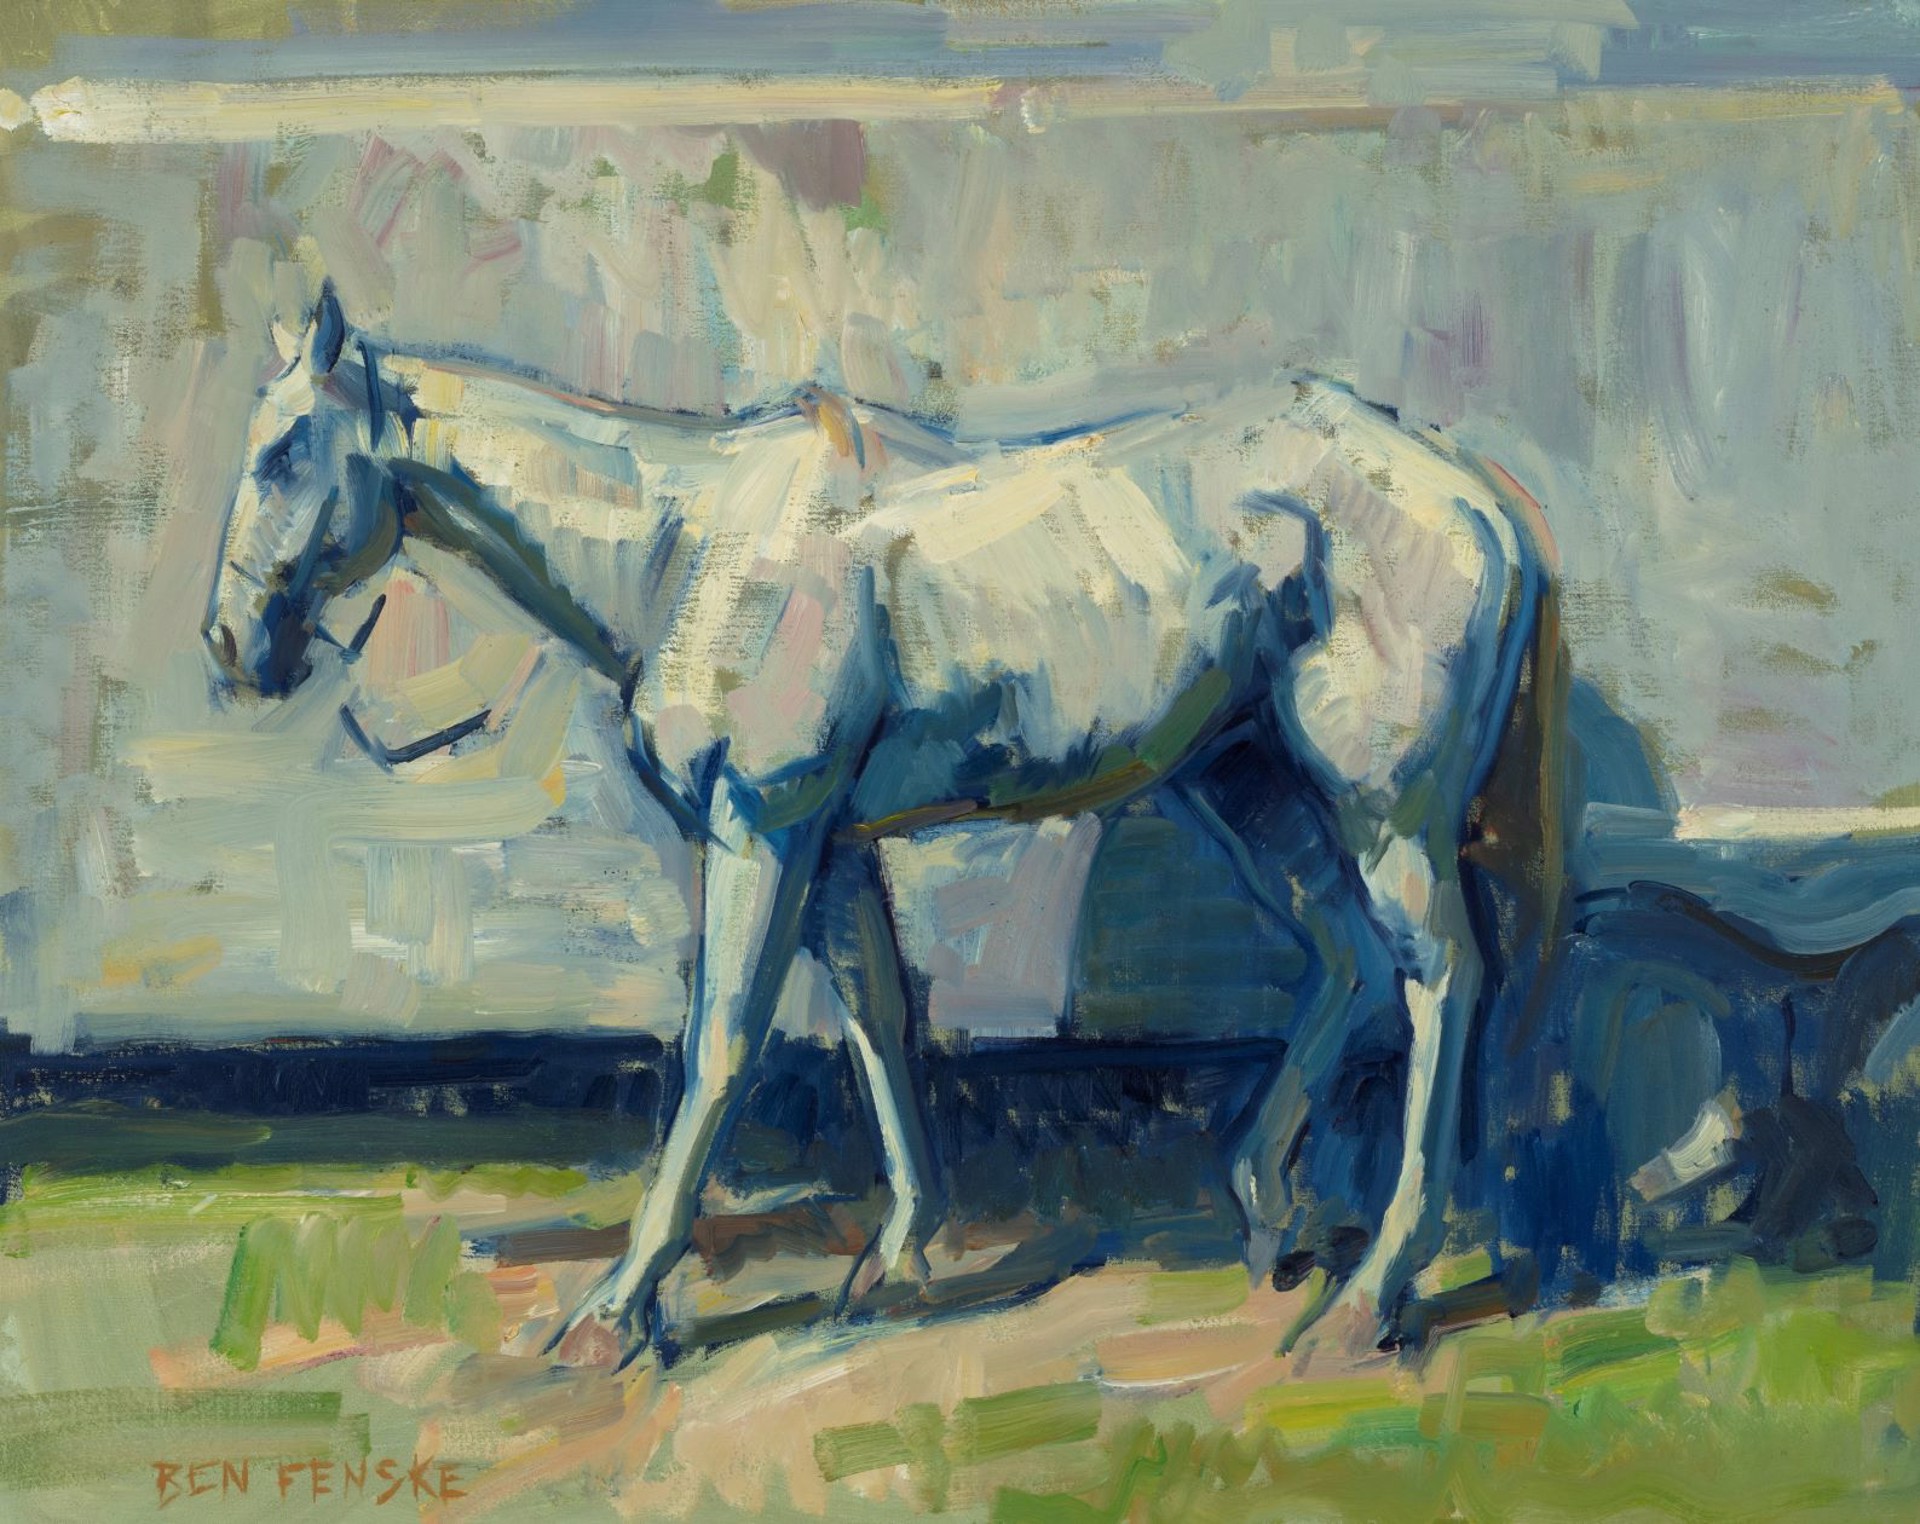 Portrait of a Horse by Ben Fenske